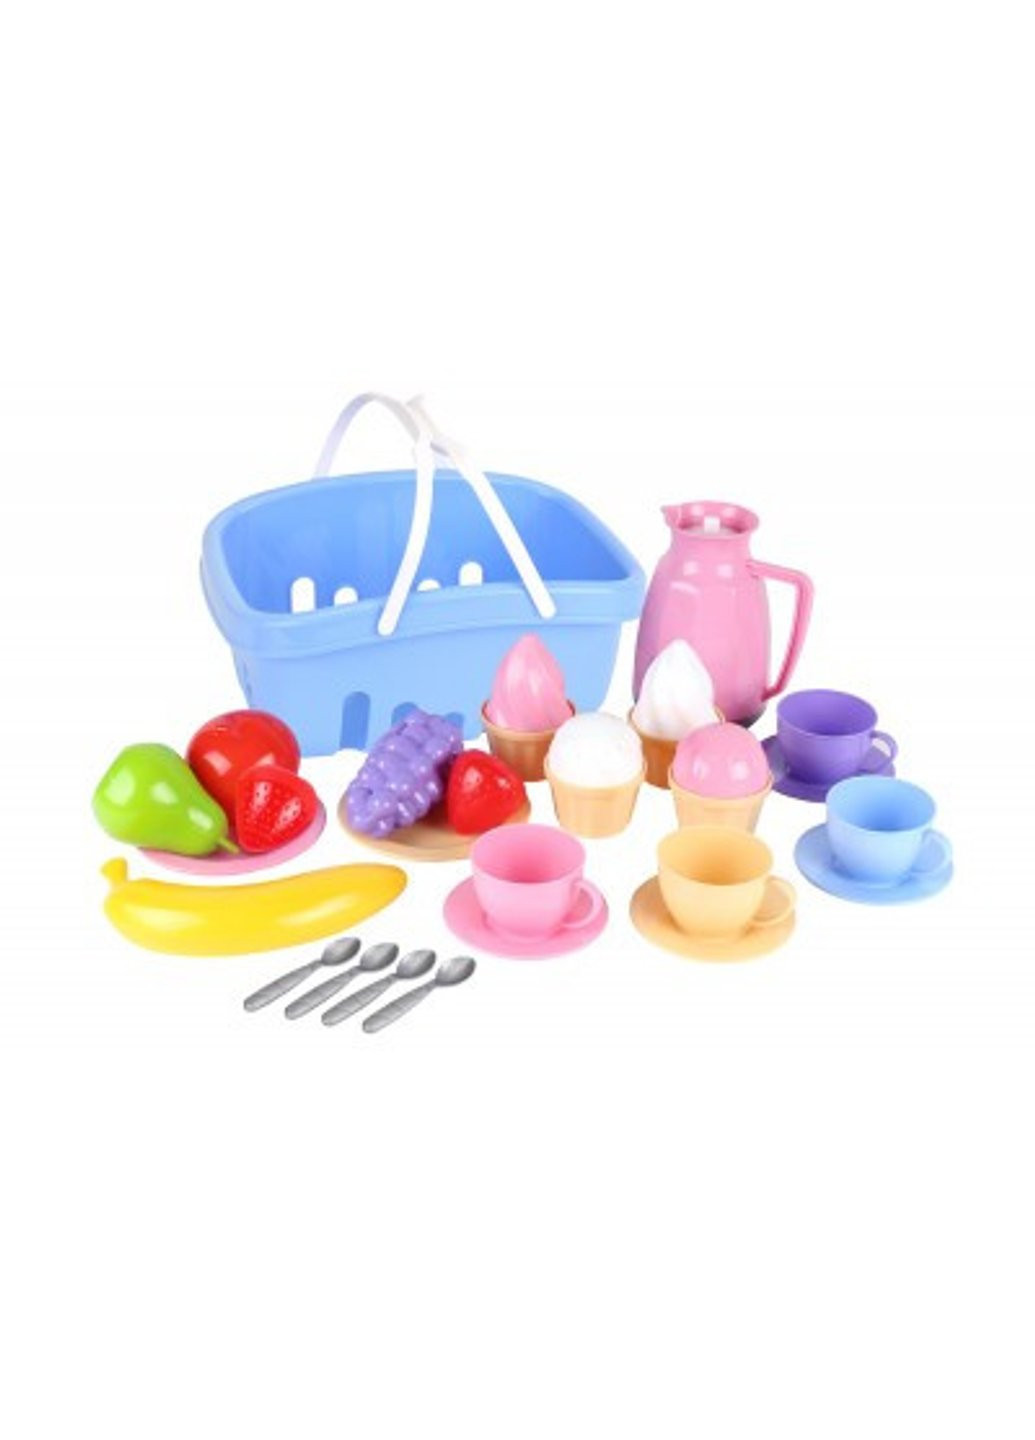 Детский кухонный набор посуды с продуктами Технок T-7242 ТехноК (254703077)